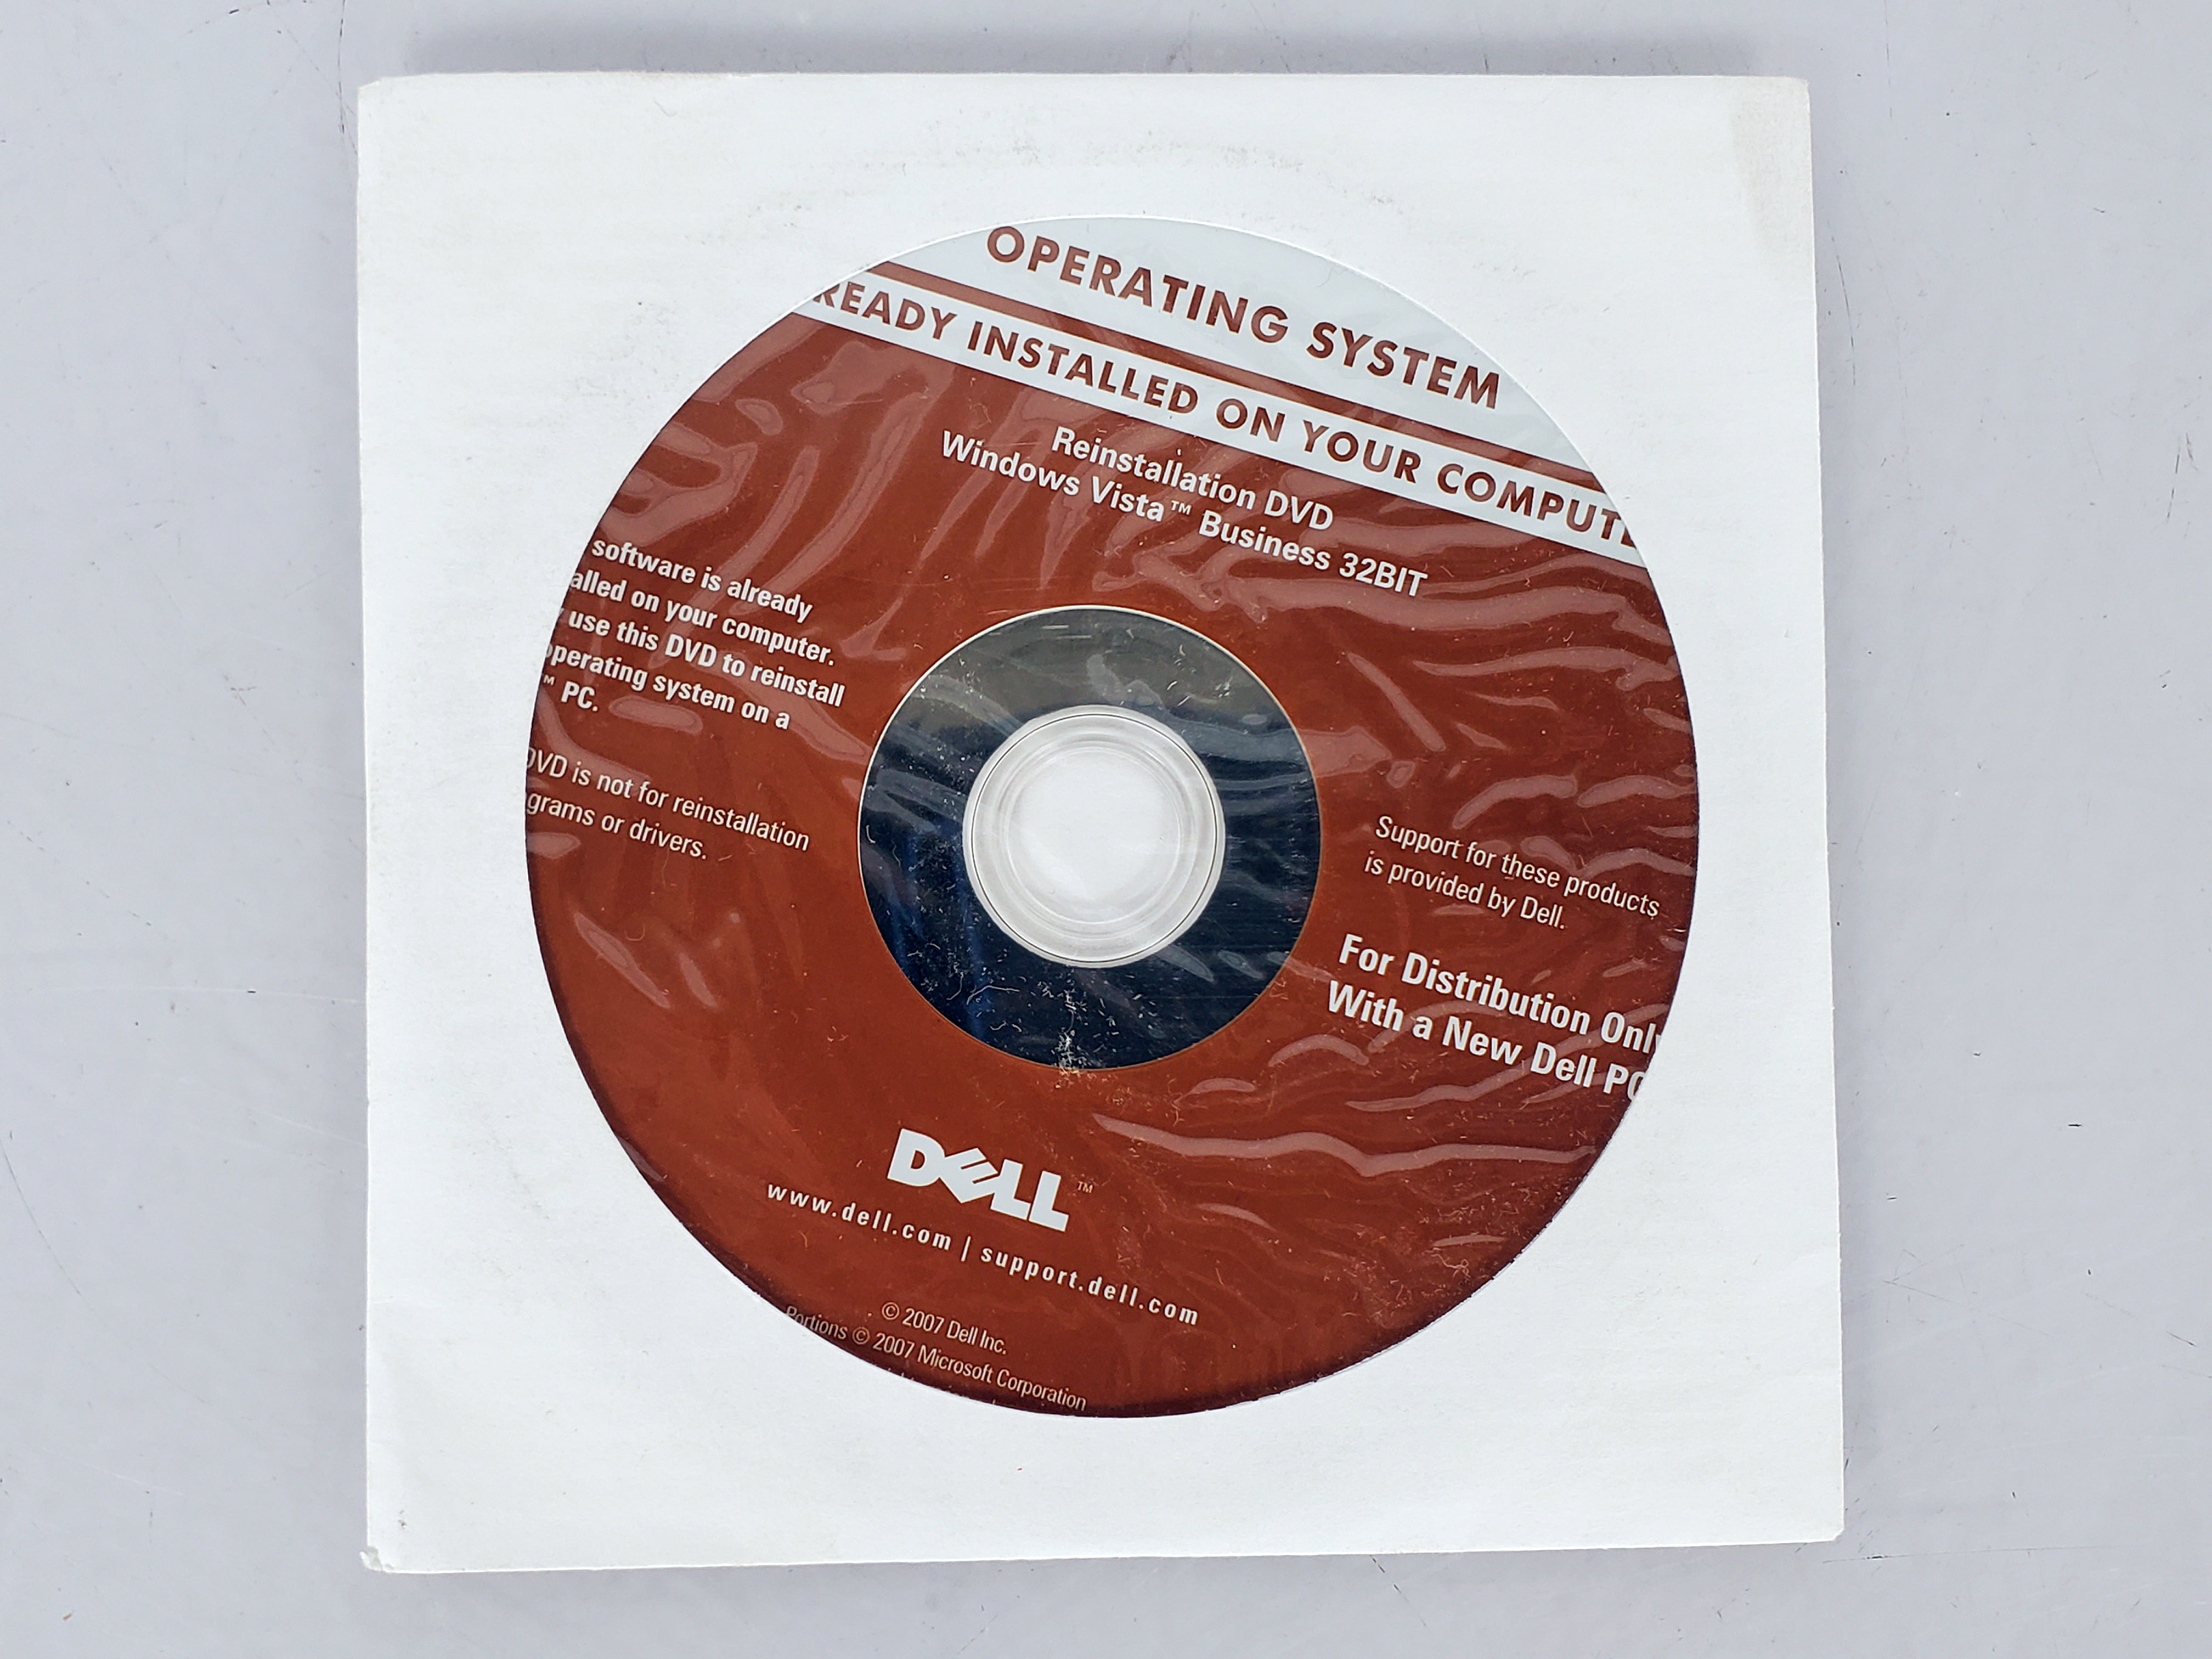 Windows Vista Business 32-Bit Re-Installation DVD